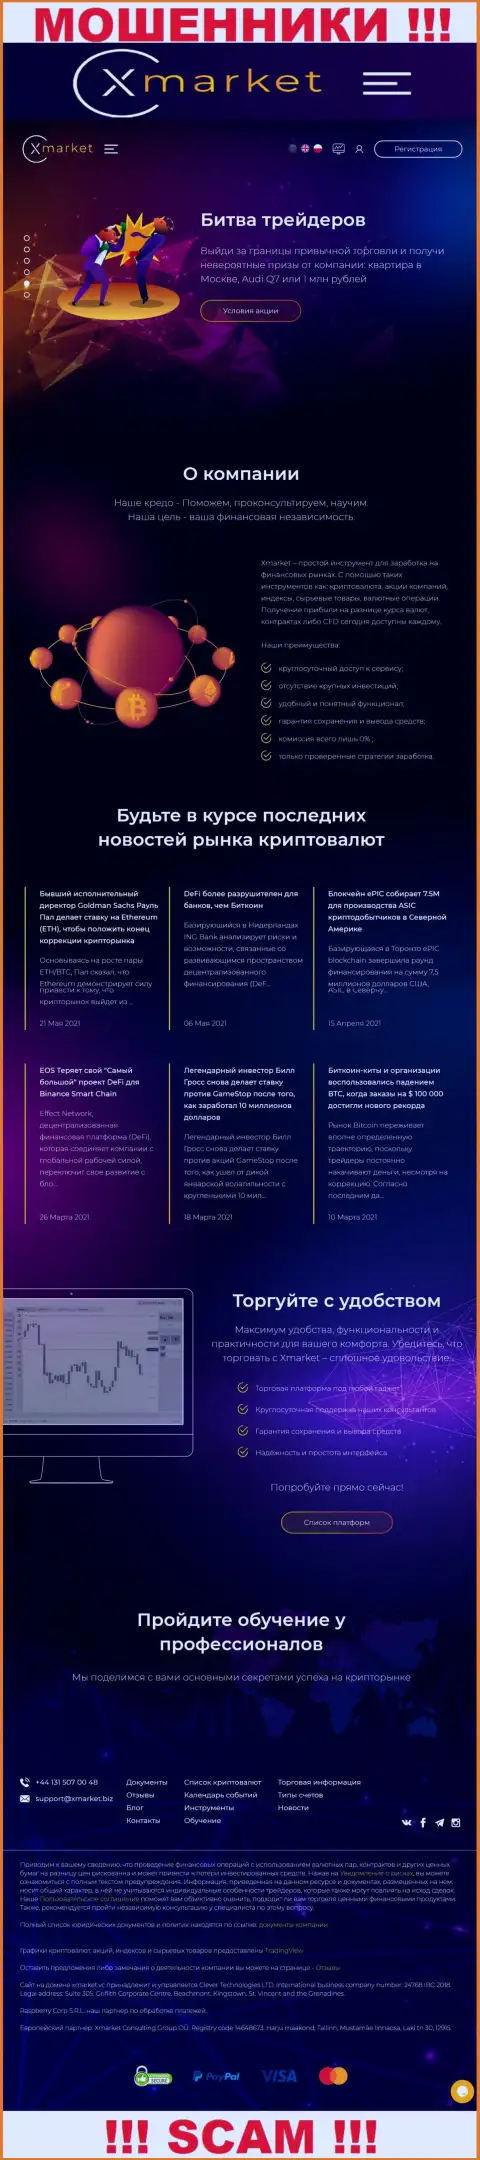 Официальный сайт мошенников и аферистов конторы XMarket